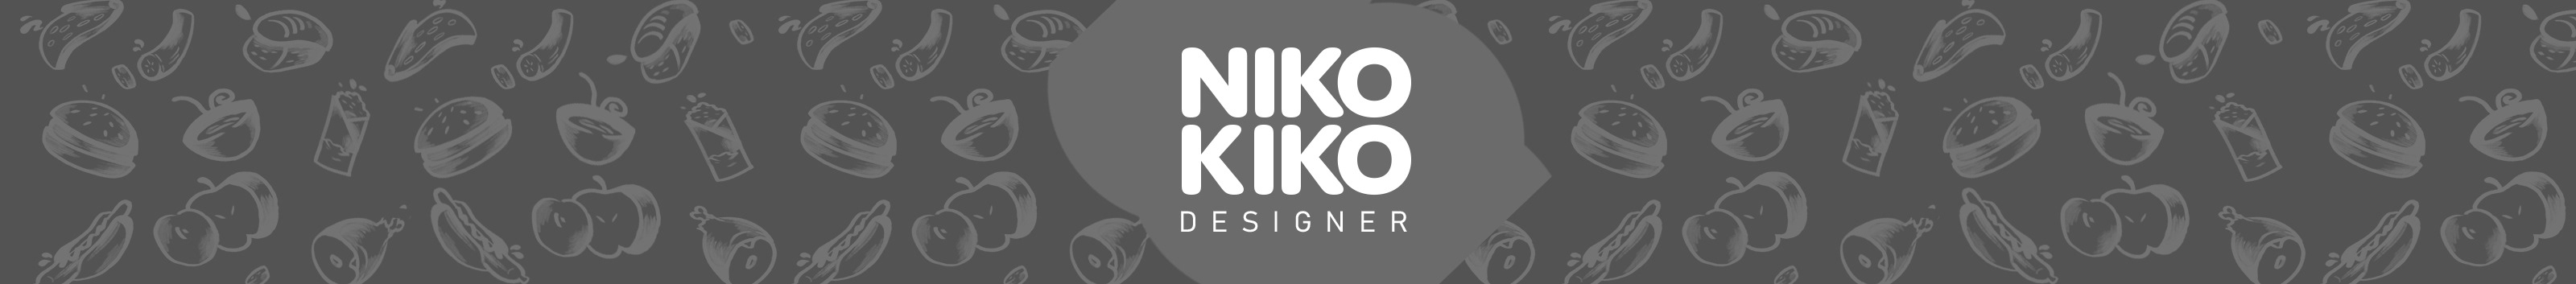 Profil-Banner von Nikola Krstic